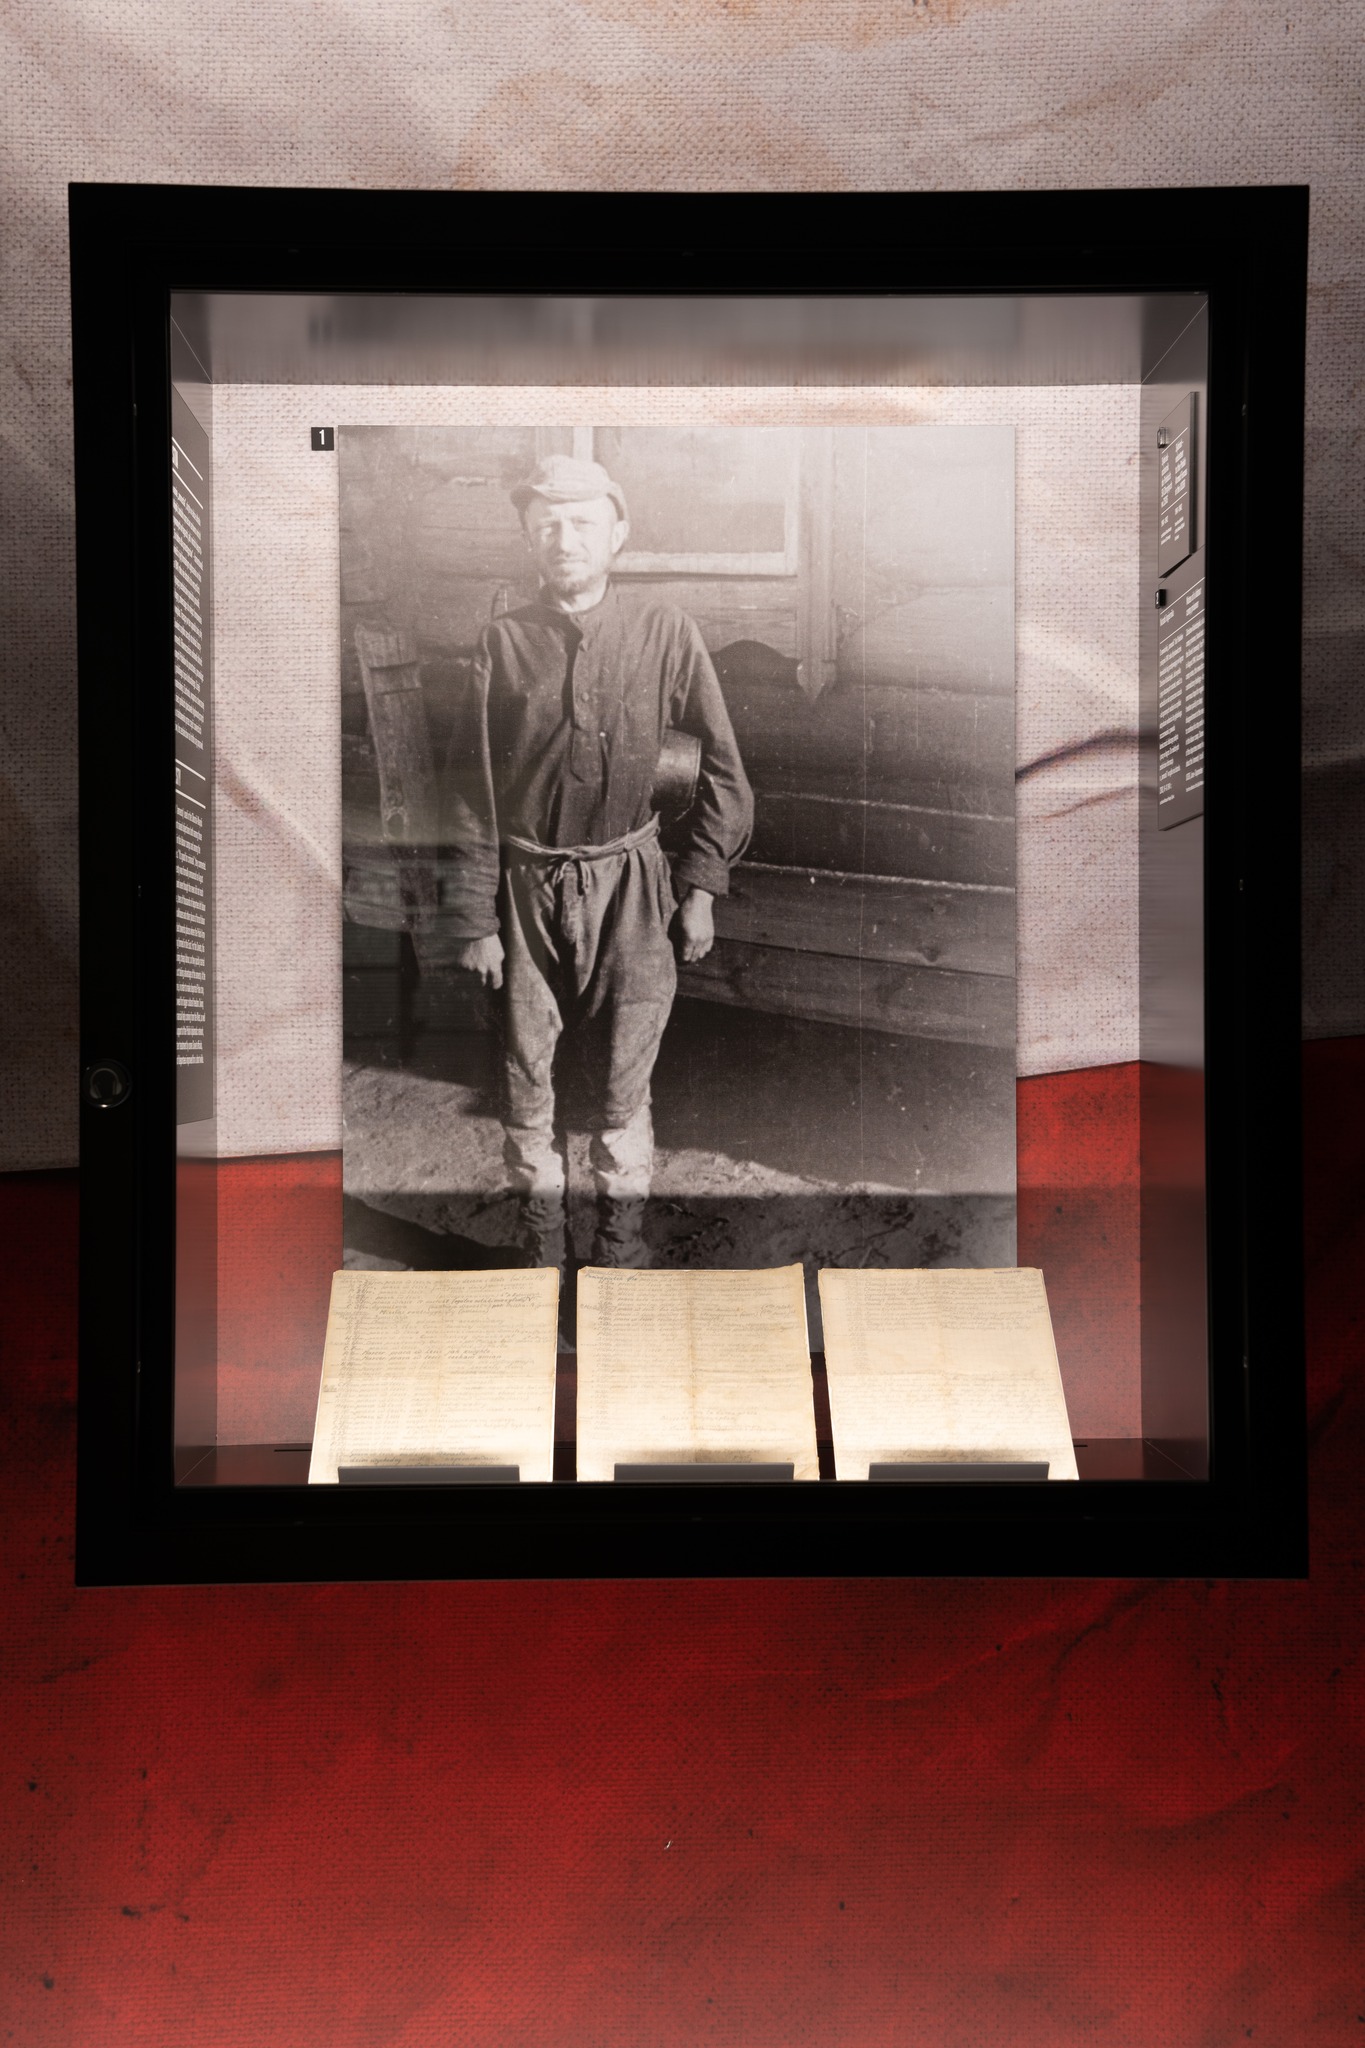 Na zdjęciu widać gablotę szklaną ze zdjęciem stojącego mężczyzny w zniszczonym ubraniu